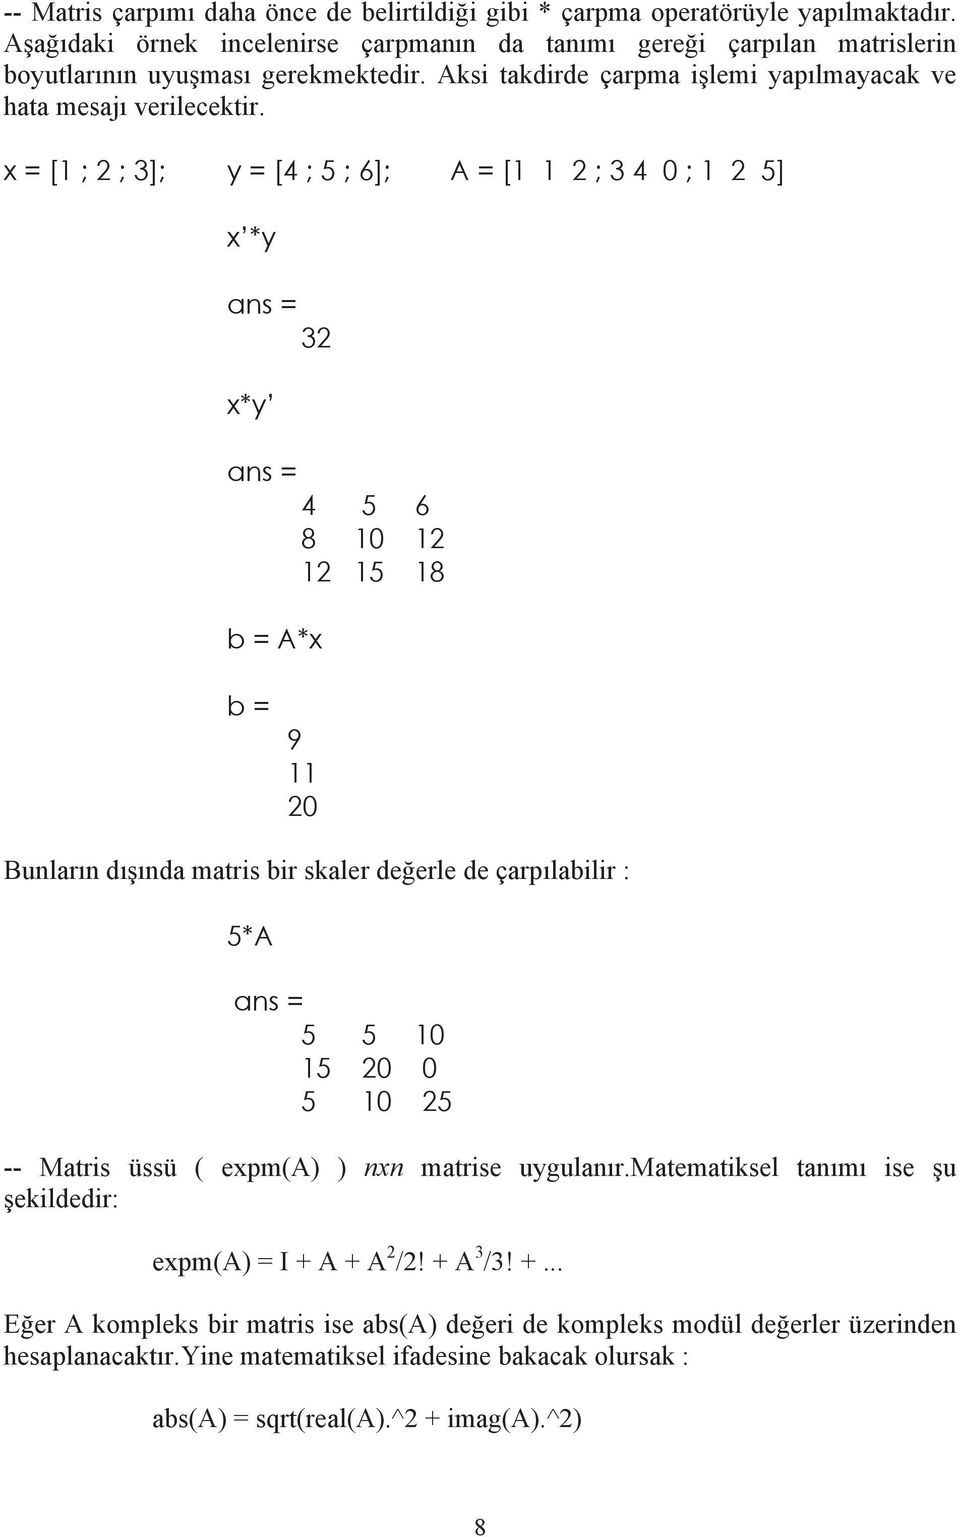 x = [1 ; 2 ; 3]; y = [4 ; 5 ; 6]; A = [1 1 2 ; 3 4 0 ; 1 2 5] x *y 32 x*y 4 5 6 8 10 12 12 15 18 b = A*x b = 9 11 20 Bunlar n d nda matris bir skaler de erle de çarp labilir : 5*A 5 5 10 15 20 0